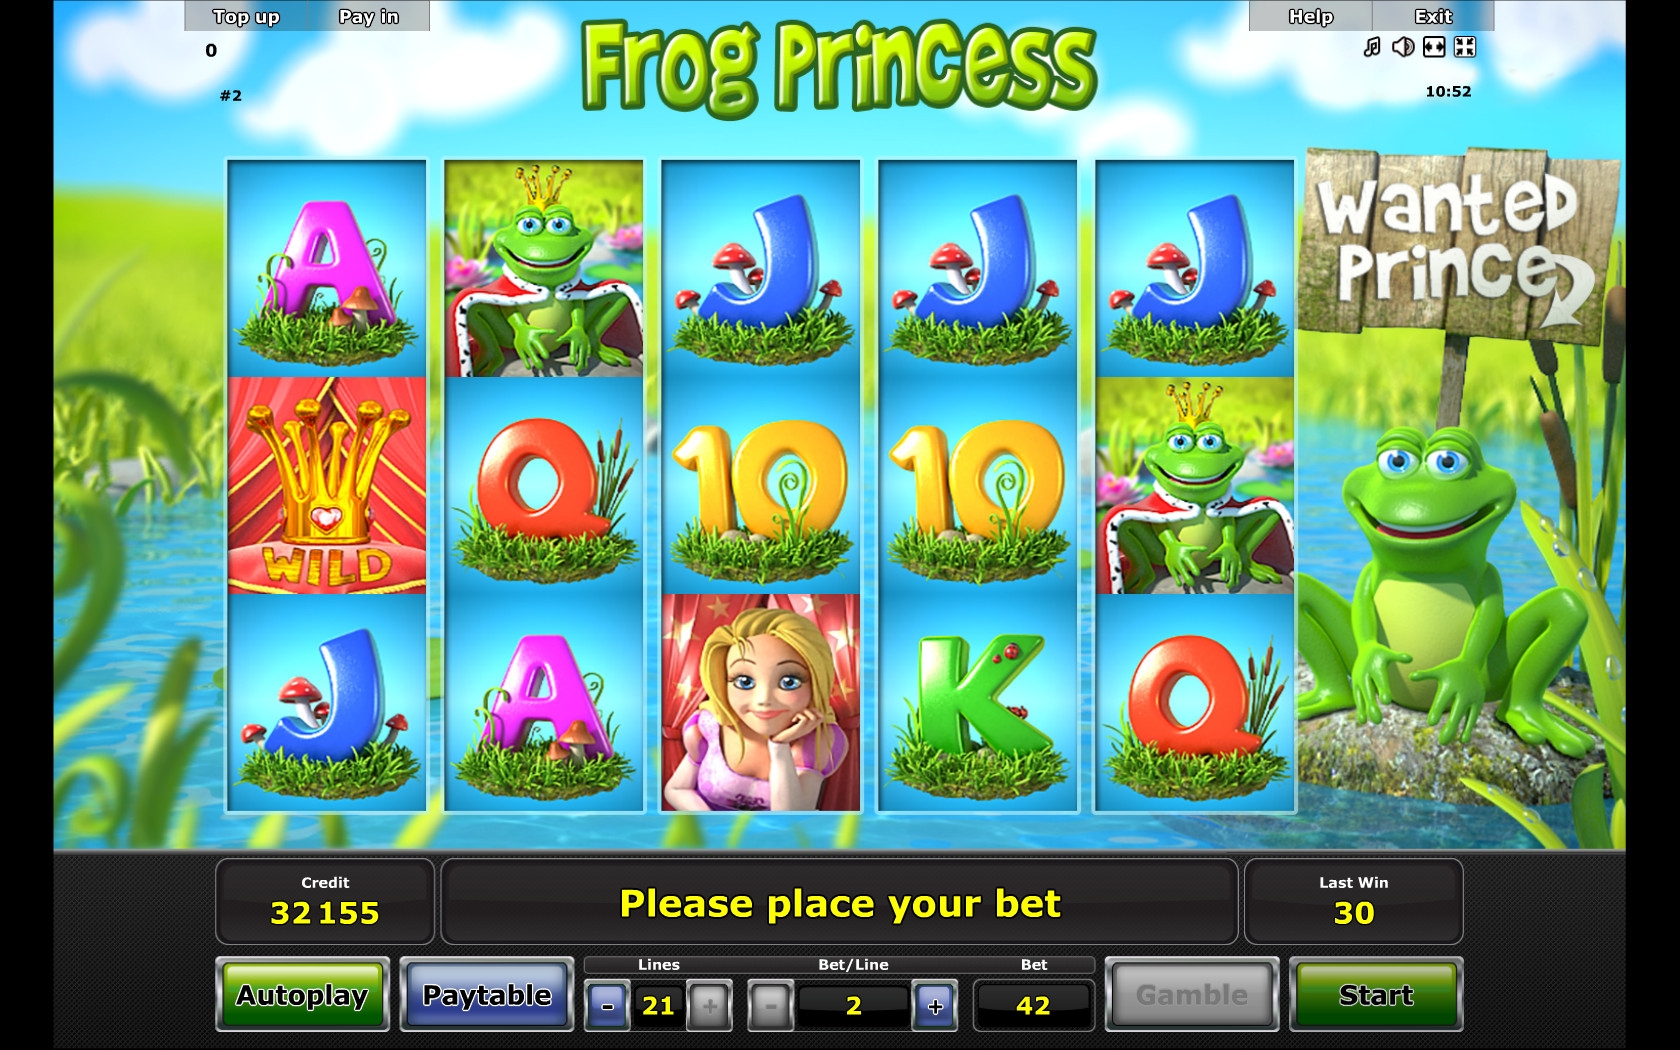 Frog Princess (Frog Princess) from category Slots